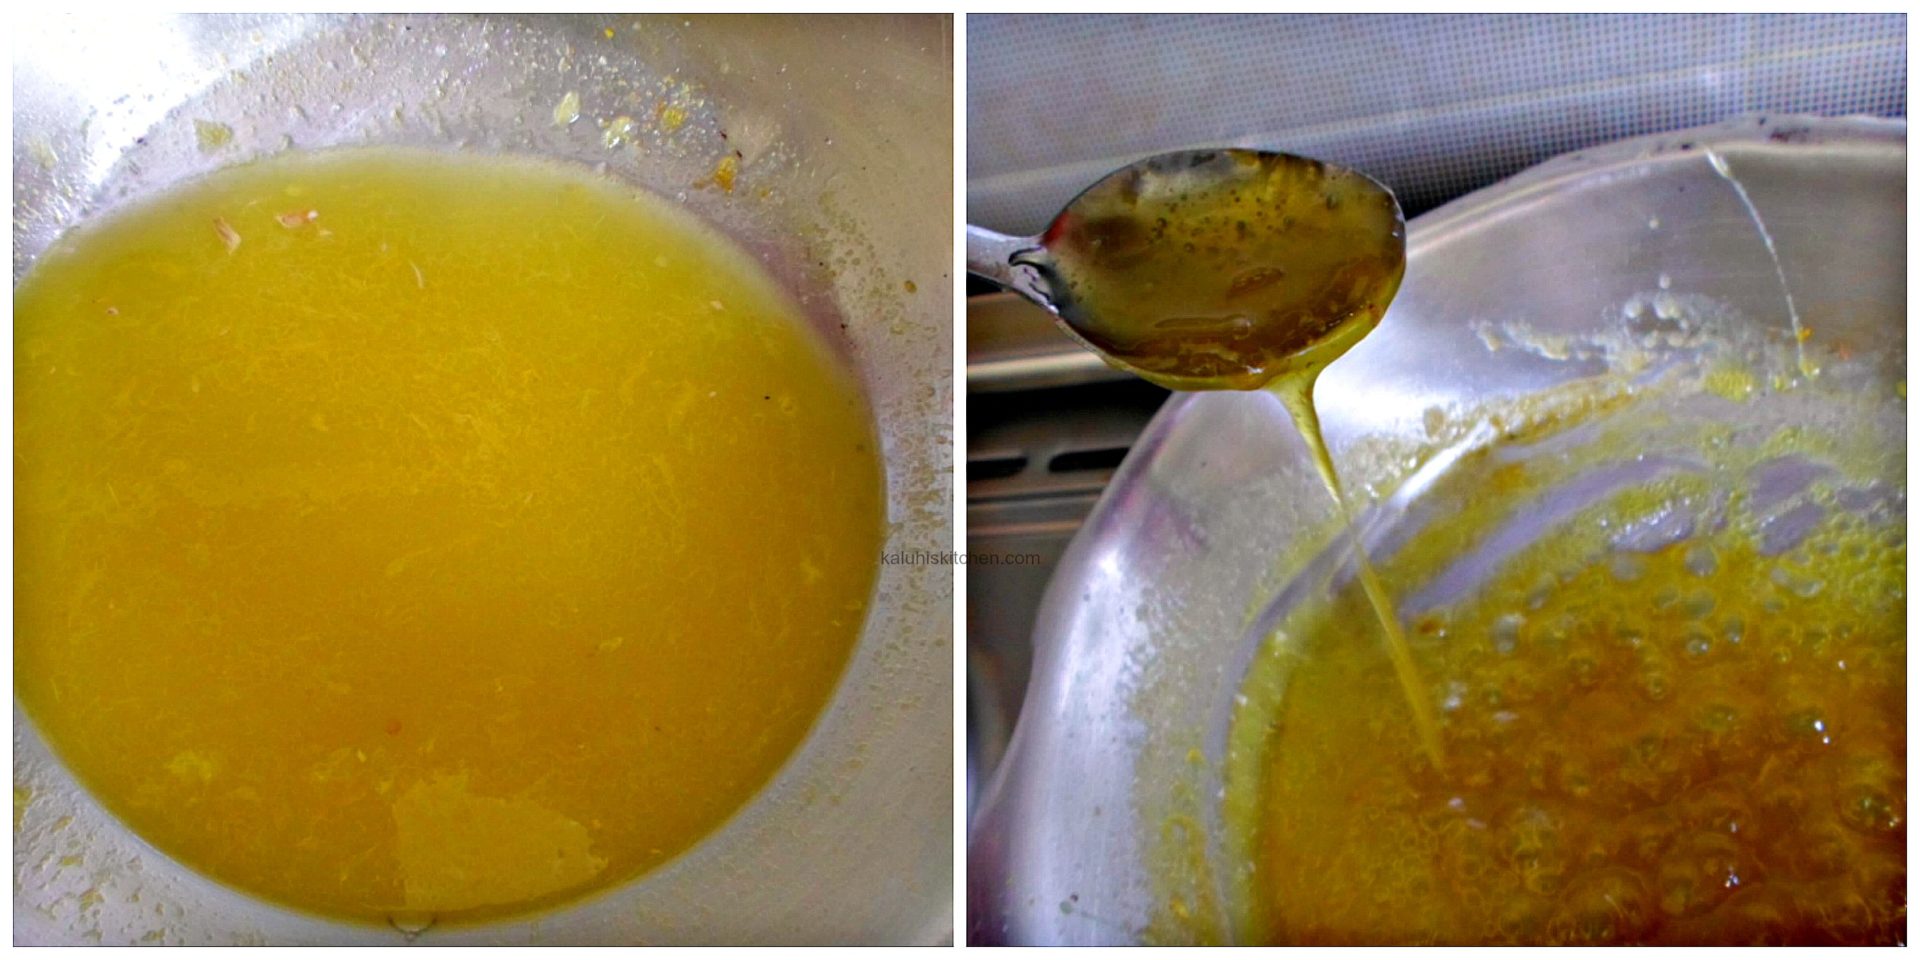 Making orange syrup for raisin pancakes